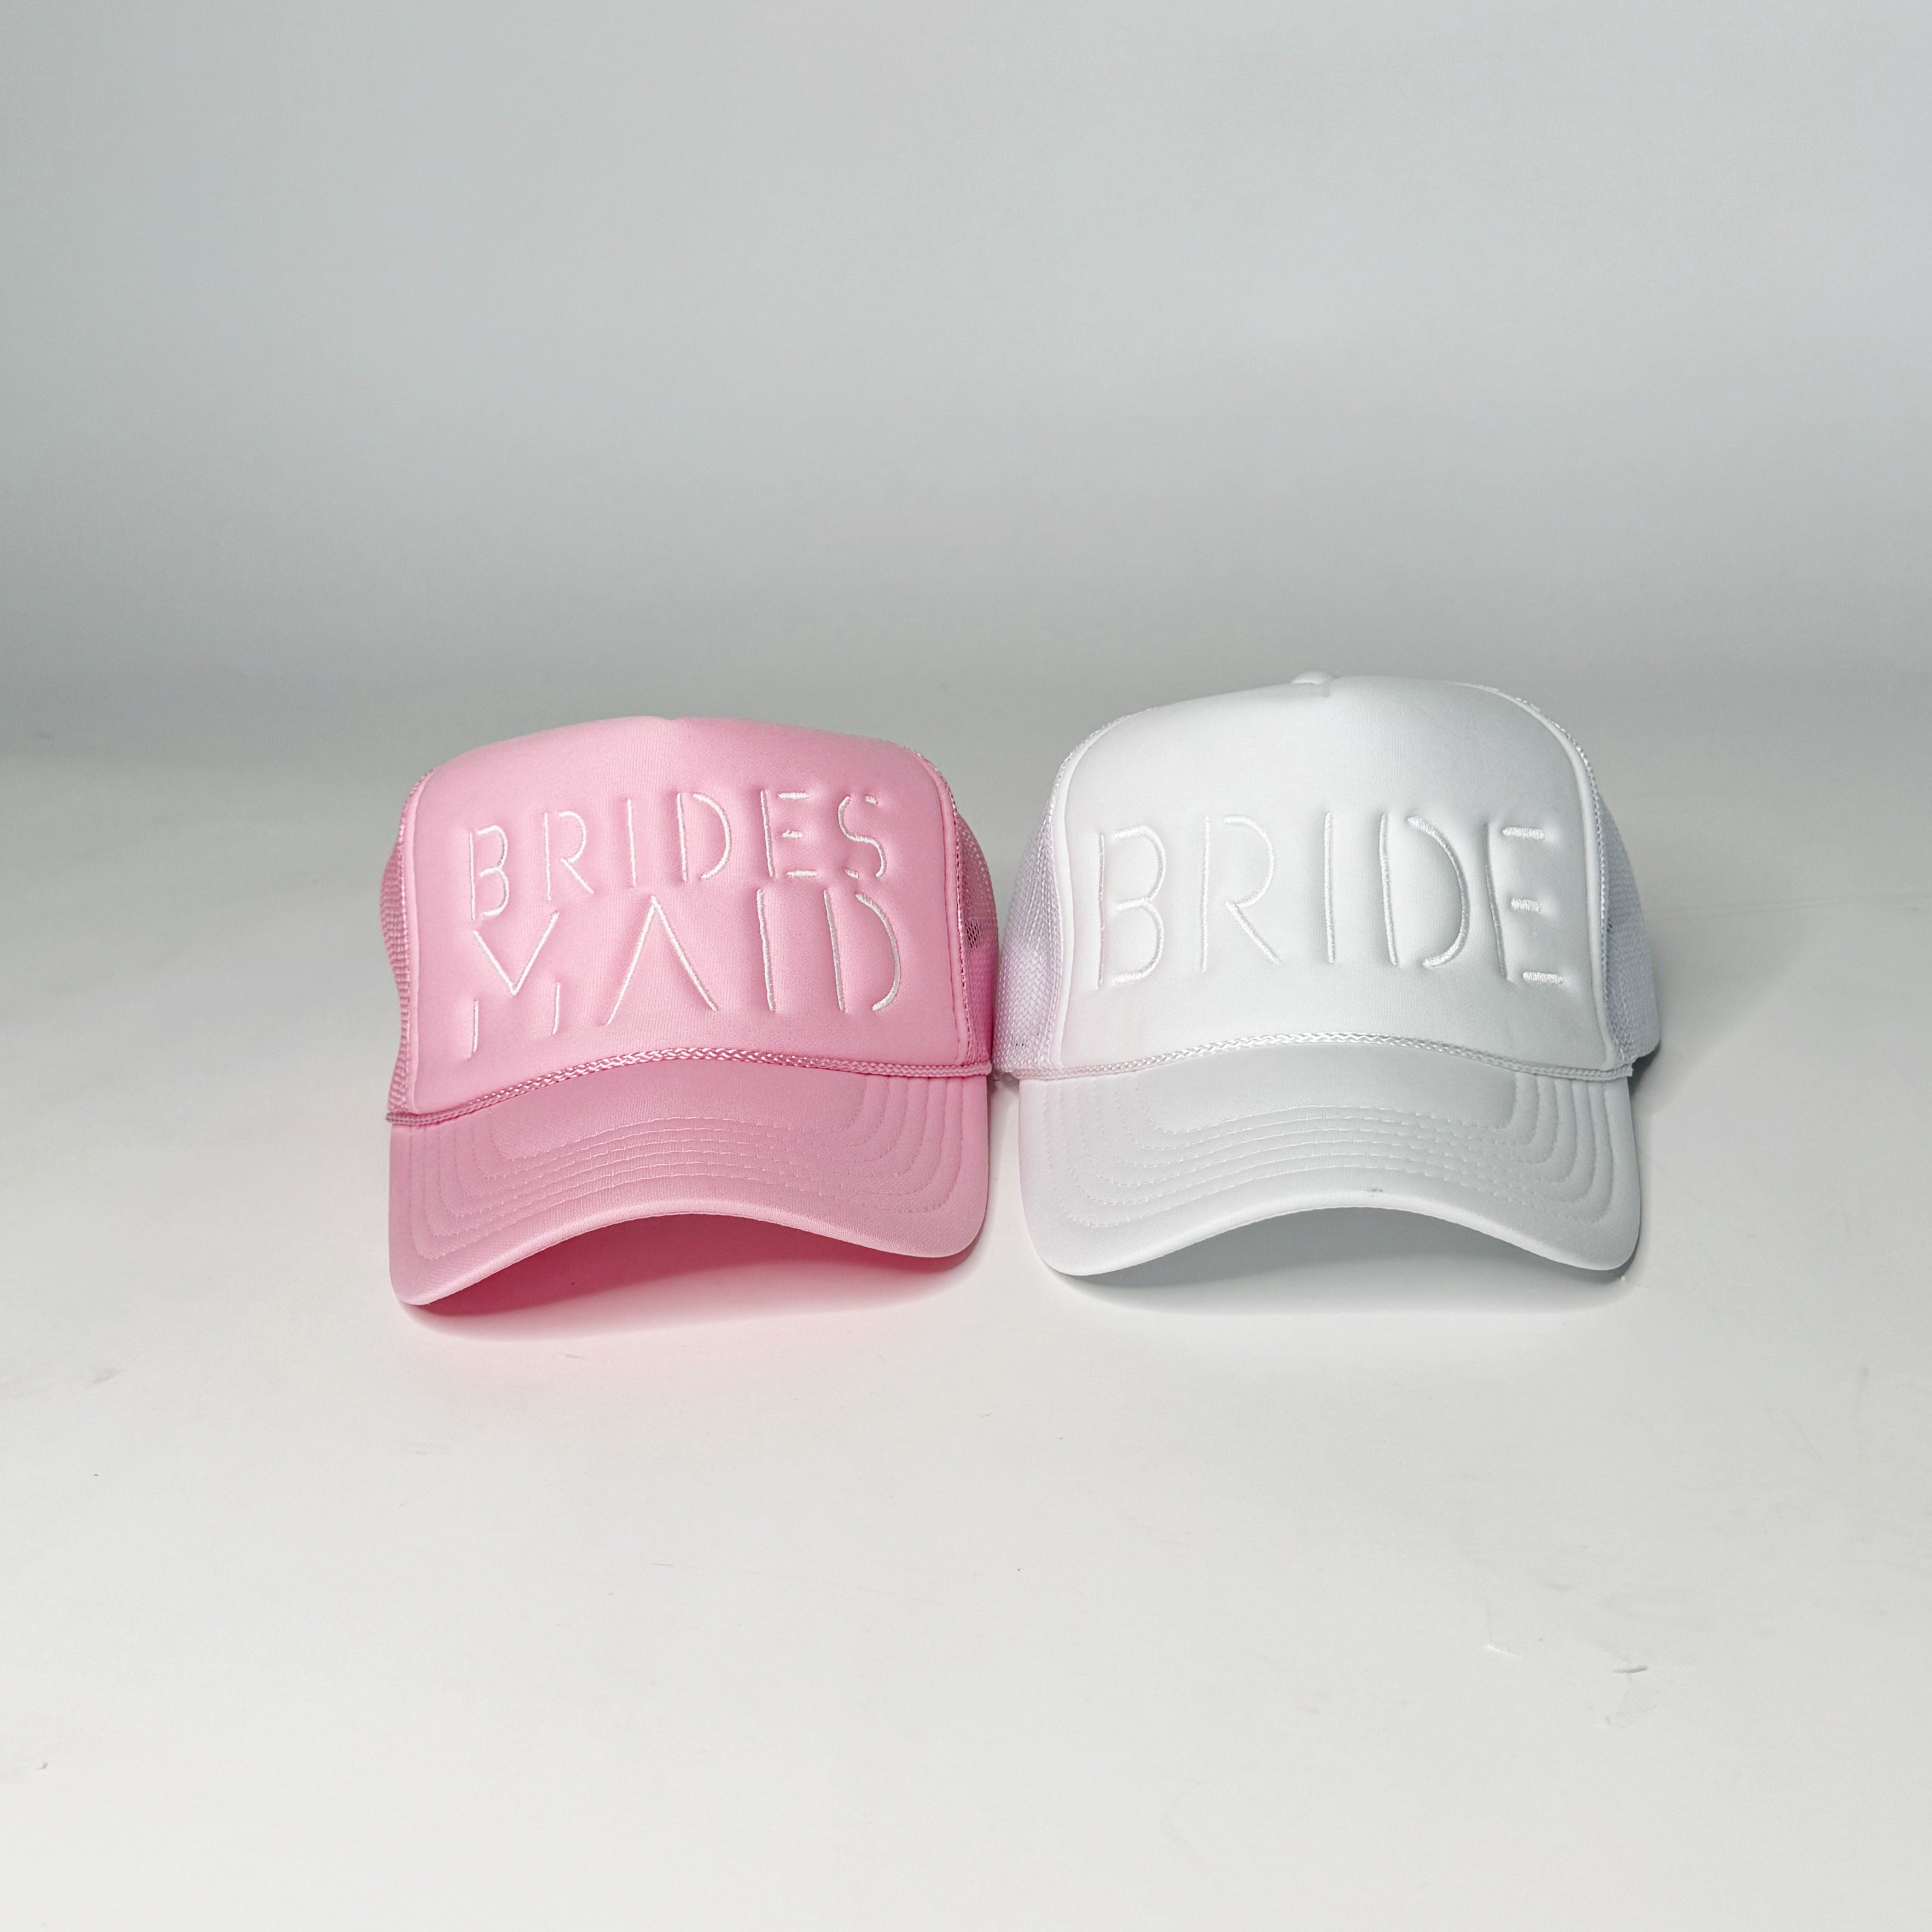 Bride and Bridesmaid Trucker Hat